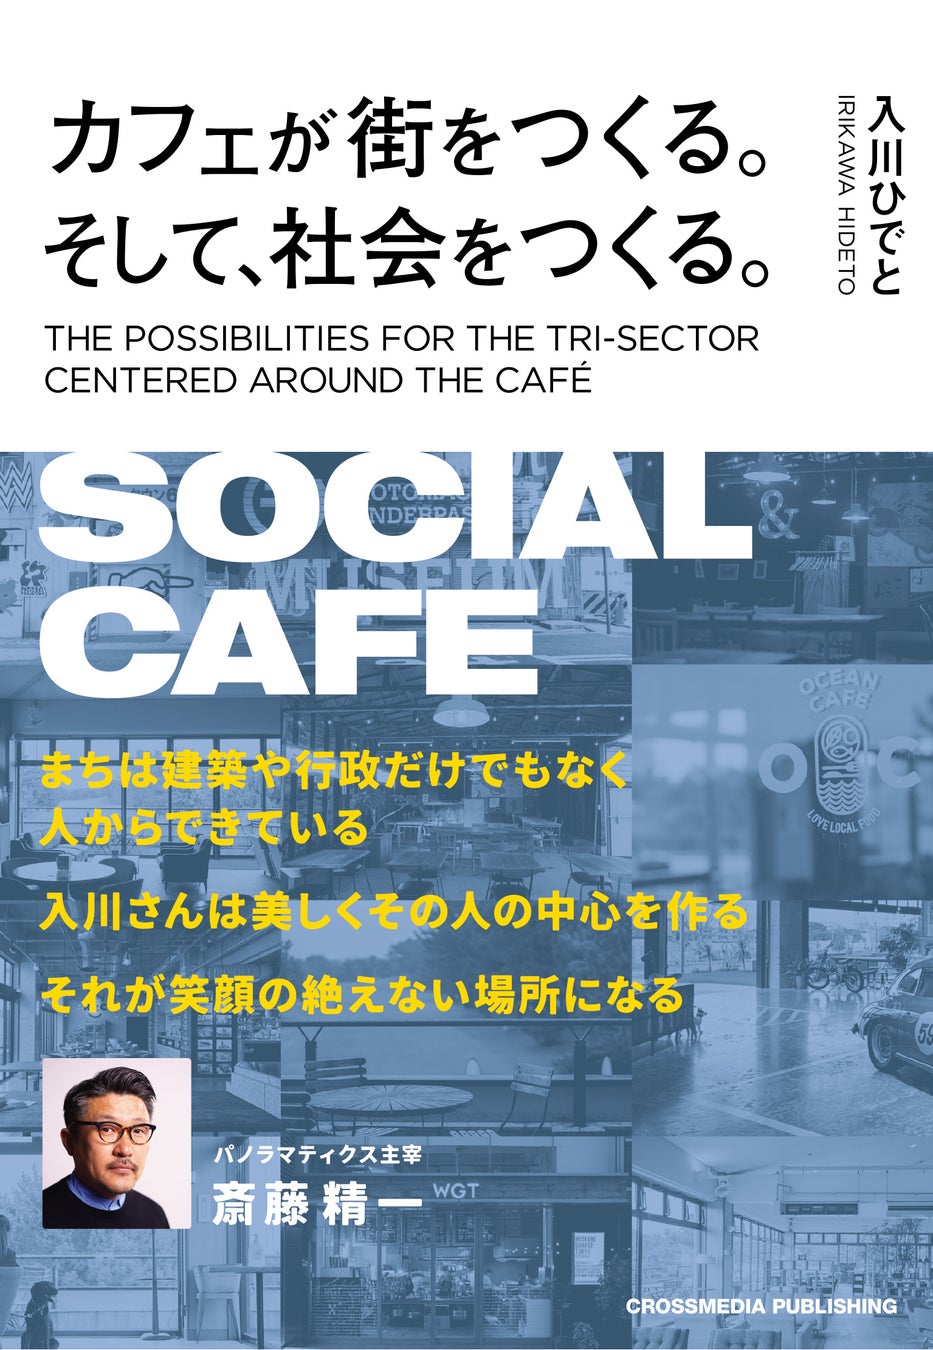 「カフェは社会を変える力を持つ」という新たな視点を提示する意欲作『カフェが街をつくる。そして、社会をつ...